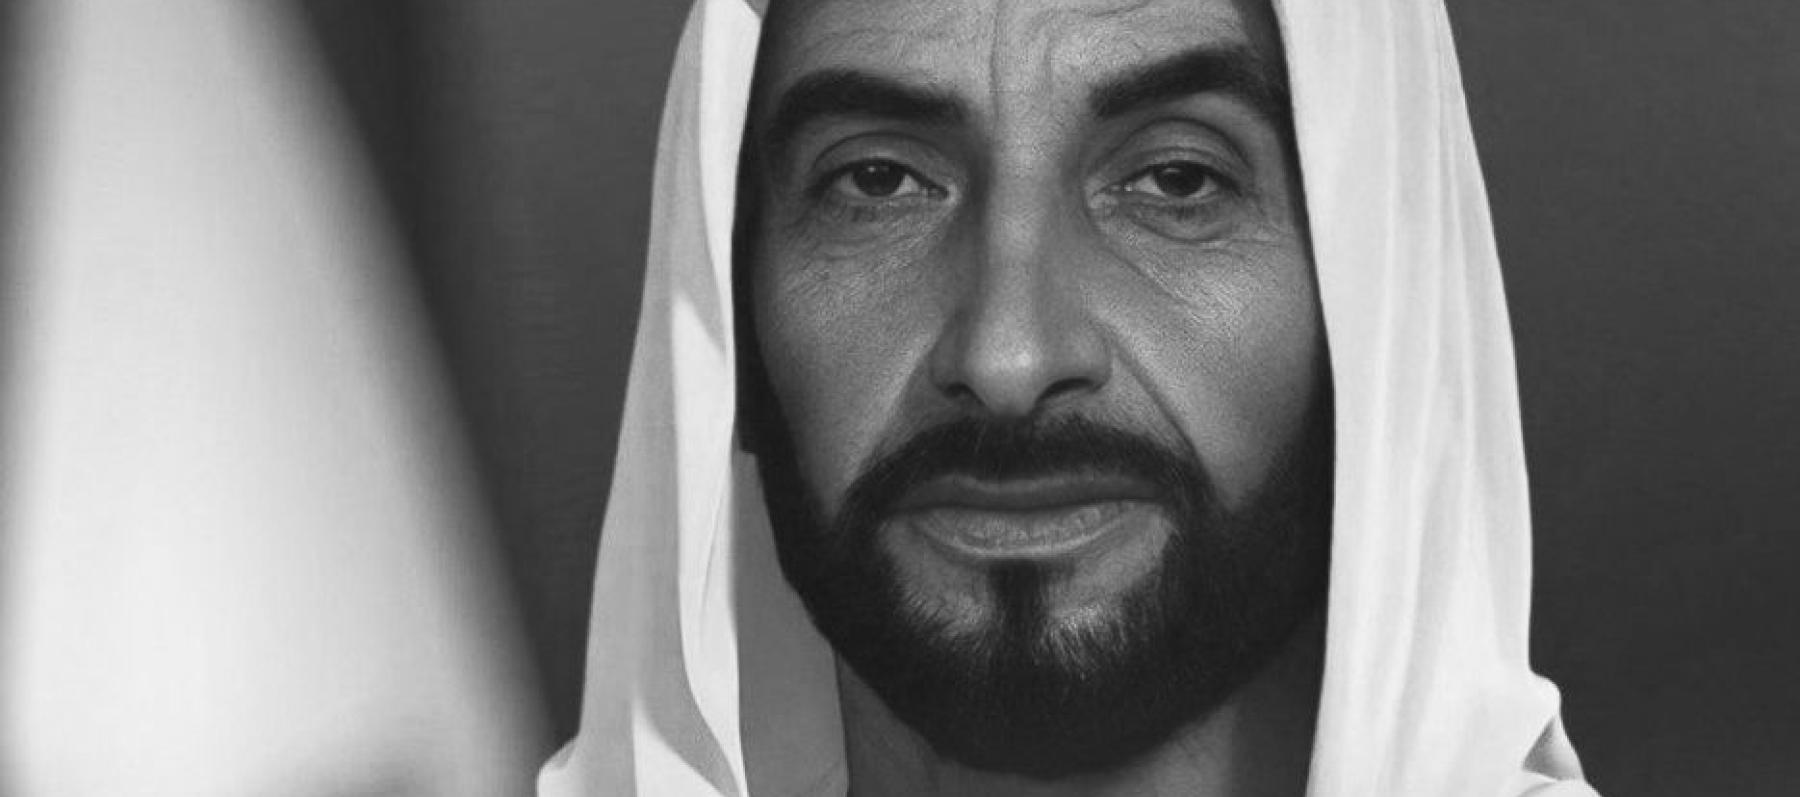 الراحل الشيخ زايدج بن سلطان آل نهيان - صورة من إكس